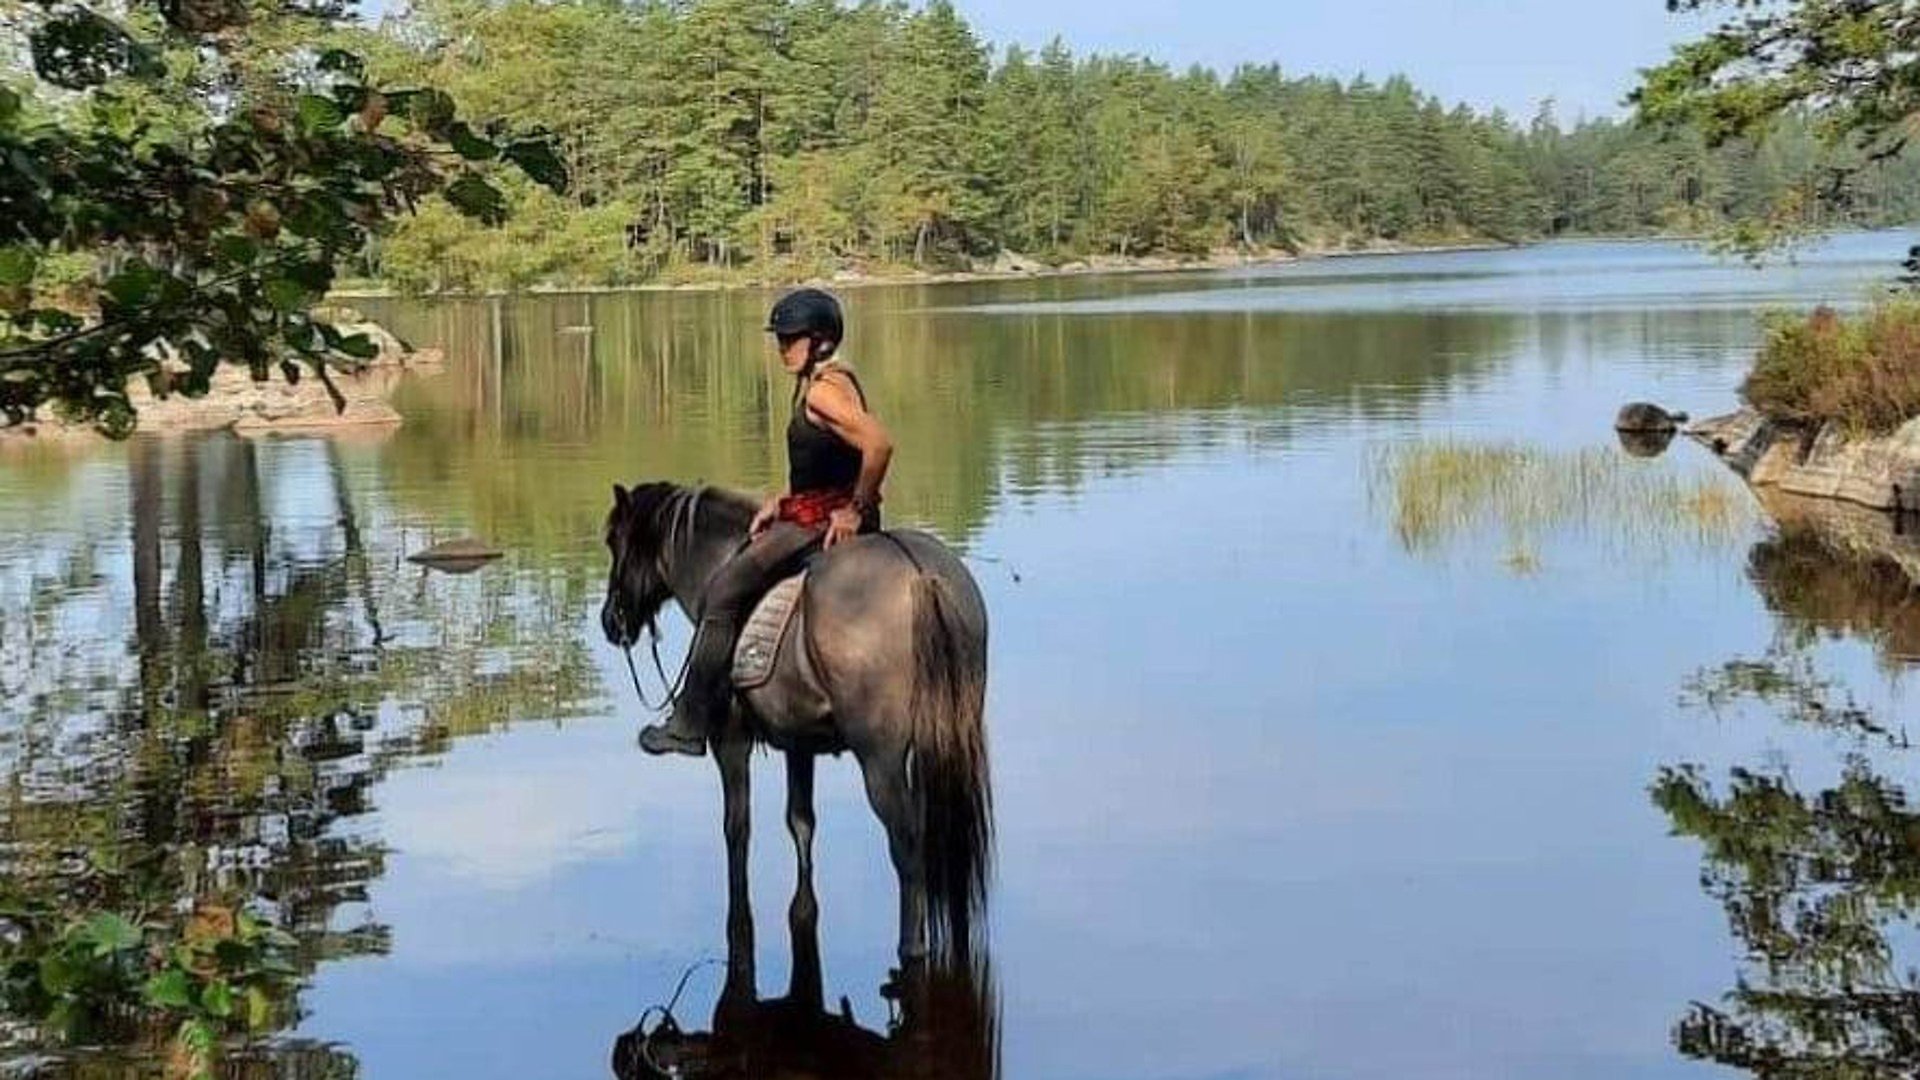 Häst som står i vattnet i en sjö med ryttare på sig. Öar med skog i bakgrunden.